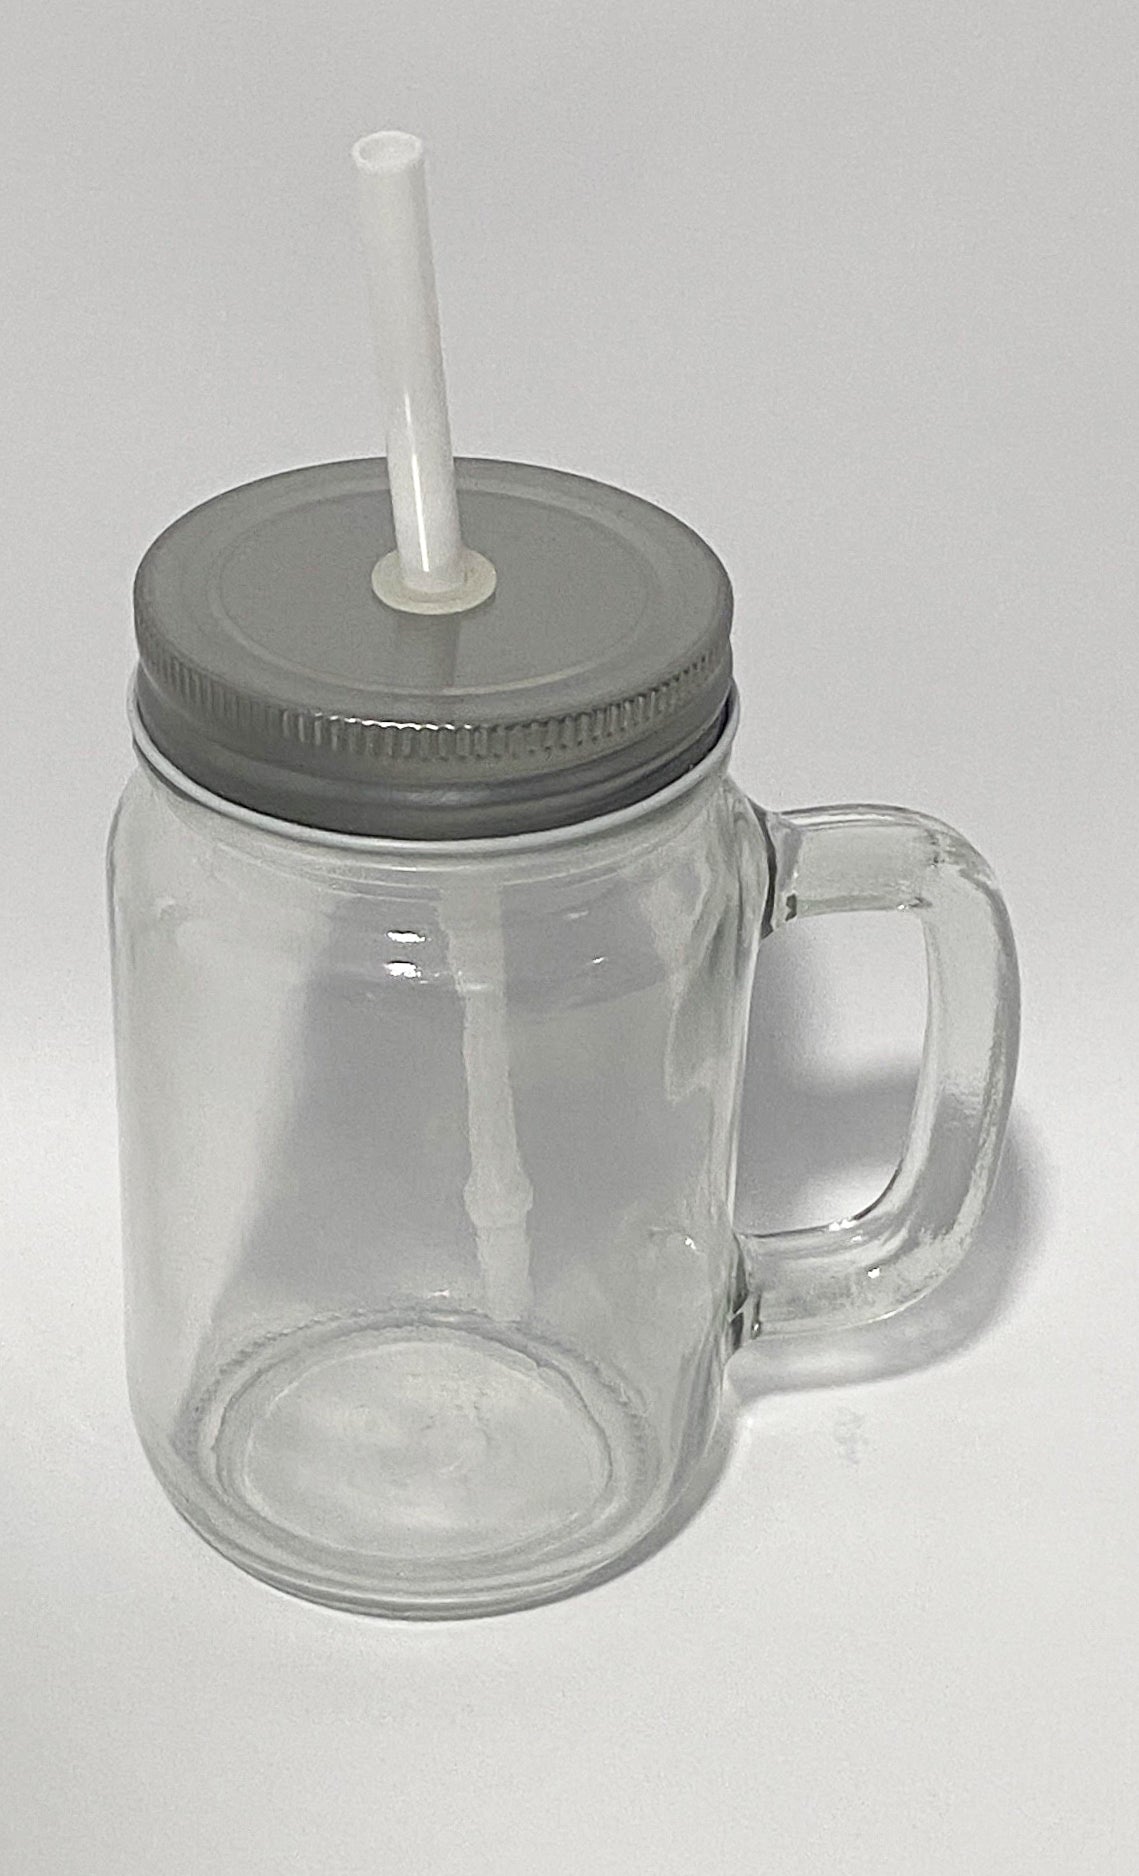 Glas mit Deckel und Strohhalm 400 ml - Sublishop.net GmbH